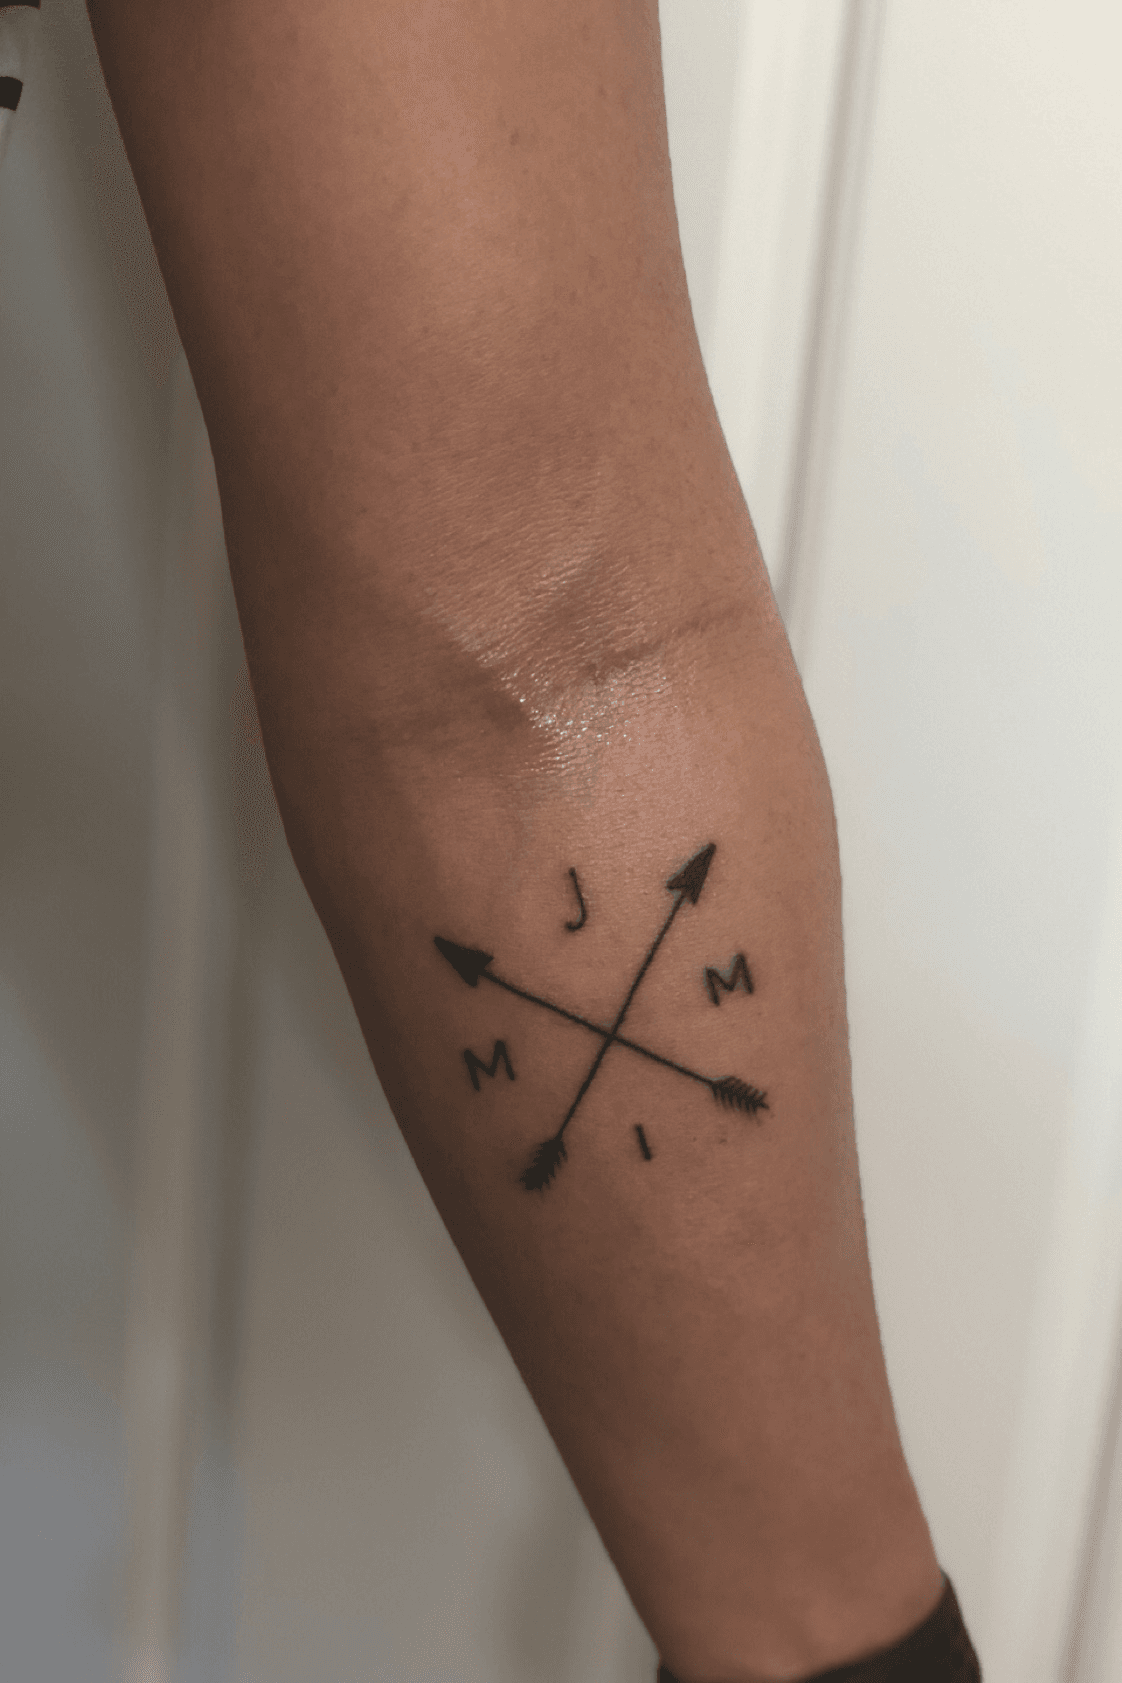 Tattoo uploaded by Jon Alvin Modesto • Compass, family, initial • Tattoodo